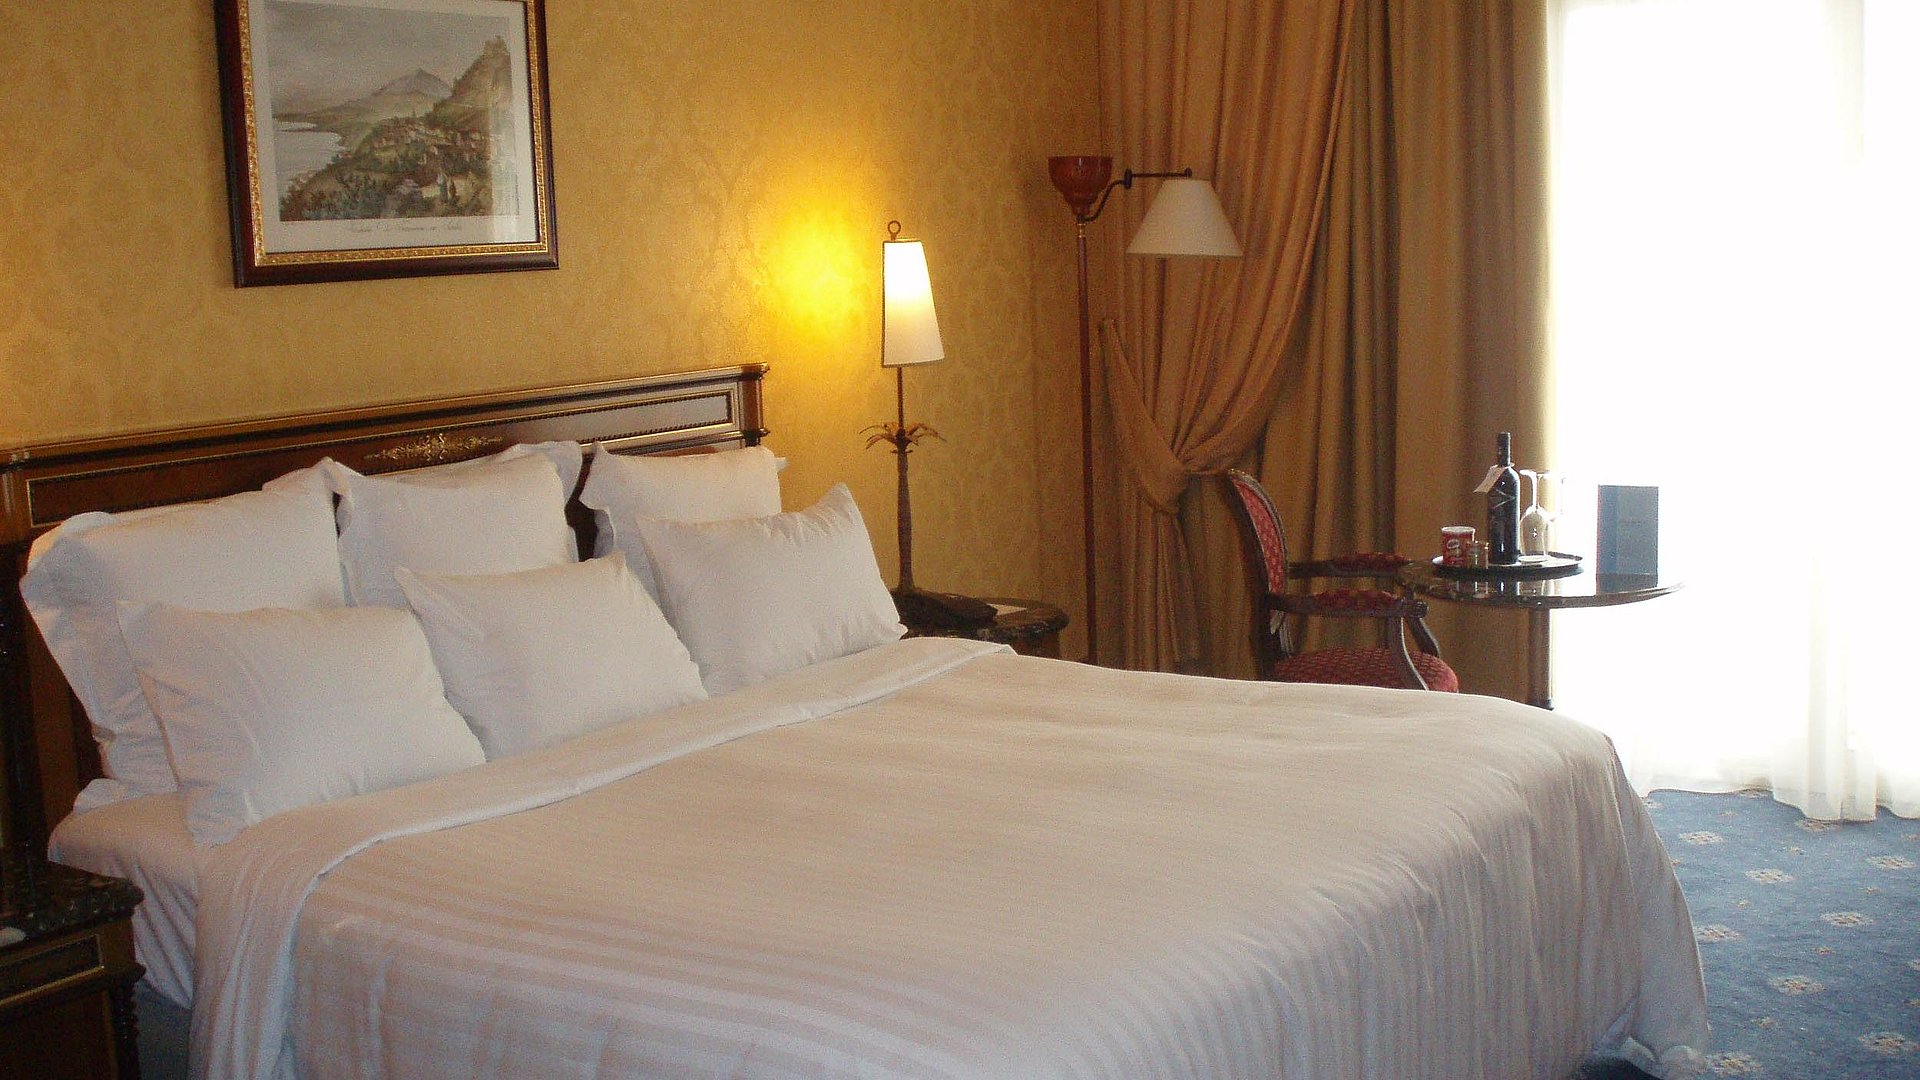 Hotels für Gruppen im Ostallgäu - sehr ordentliches Hotelzimmer mit großem Bett und warmer Nachtlampe wird durch weiße Gardinen durchleuchtet